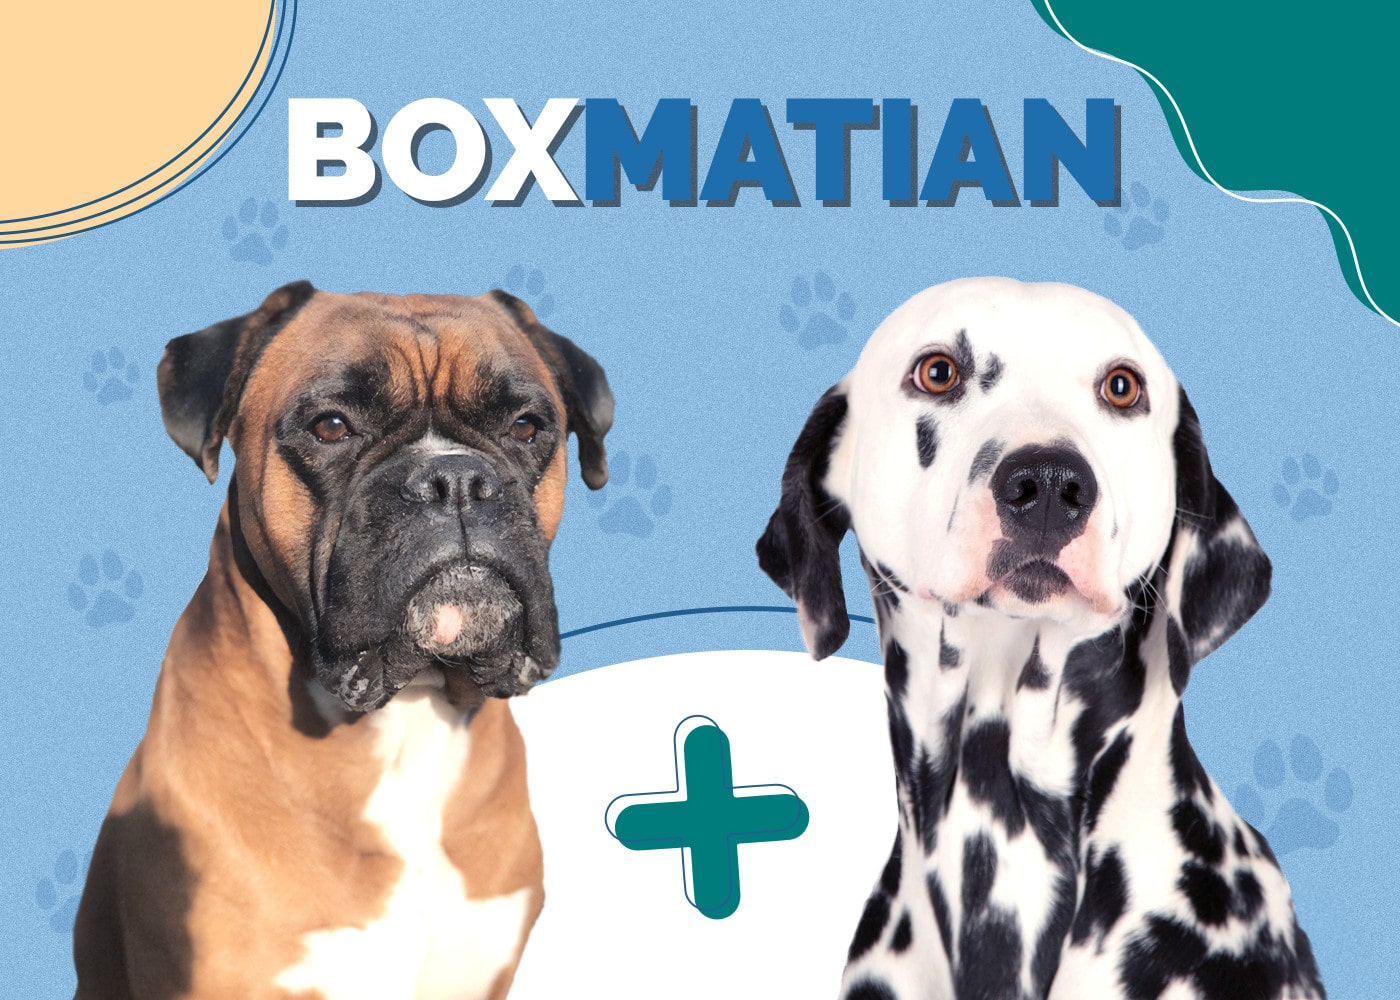 Boxmatian (Boxer & Dalmatian Mix)